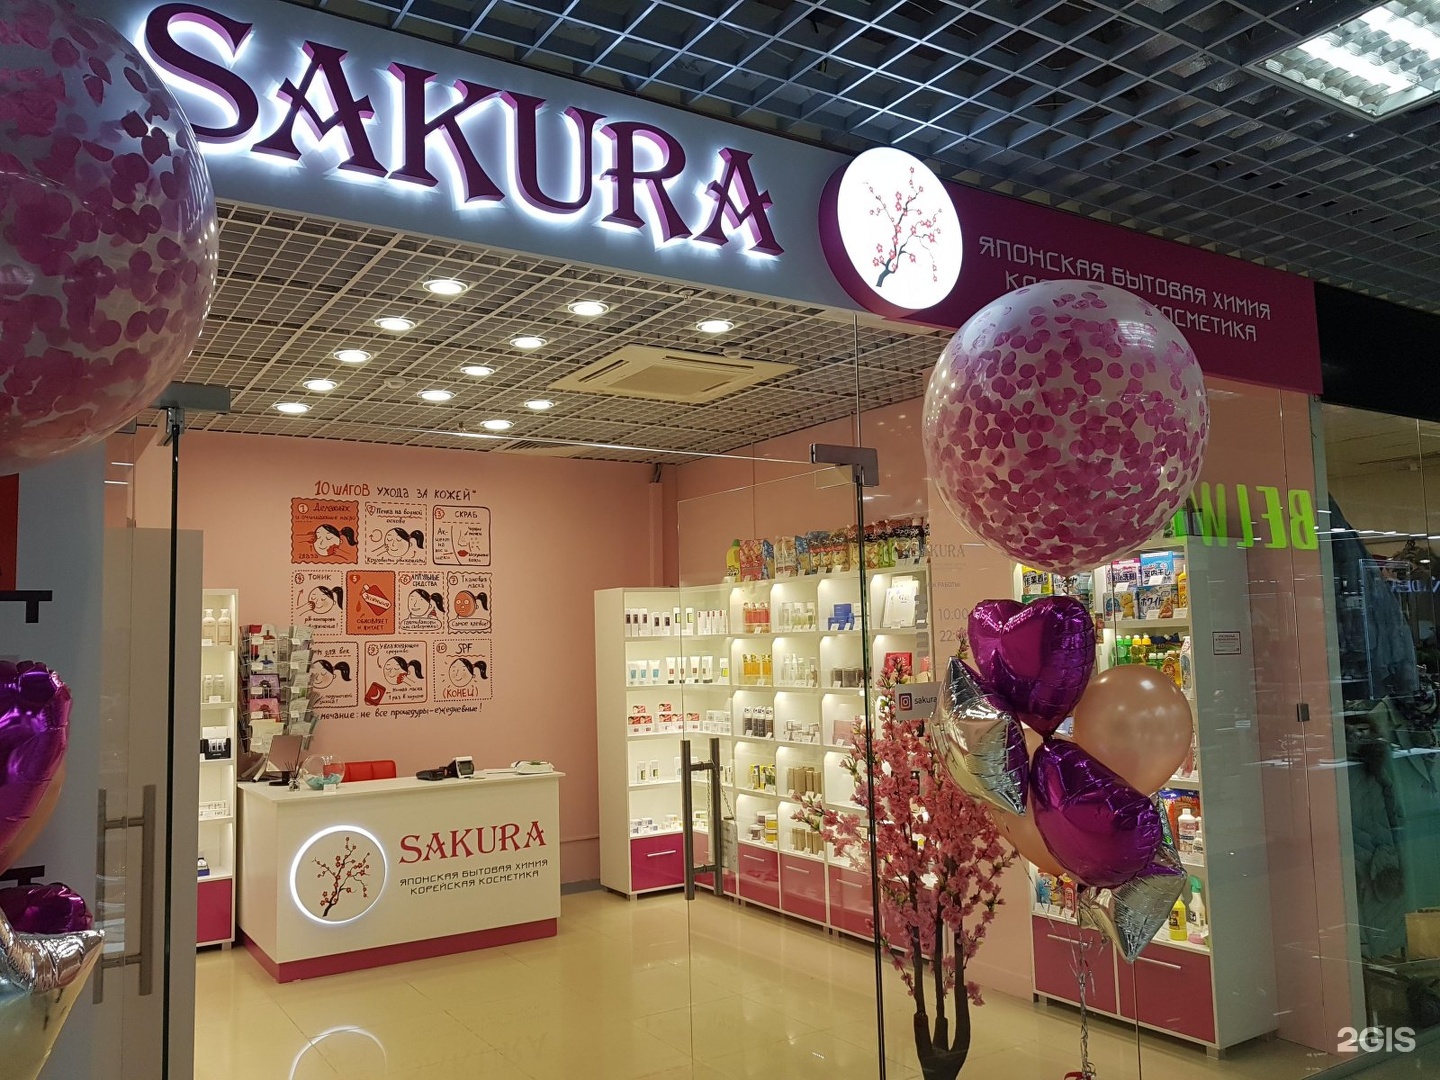 Сакура товары. Магазин японской косметики. Sakura магазин. Сакура магазин японской косметики. Название магазина косметики.